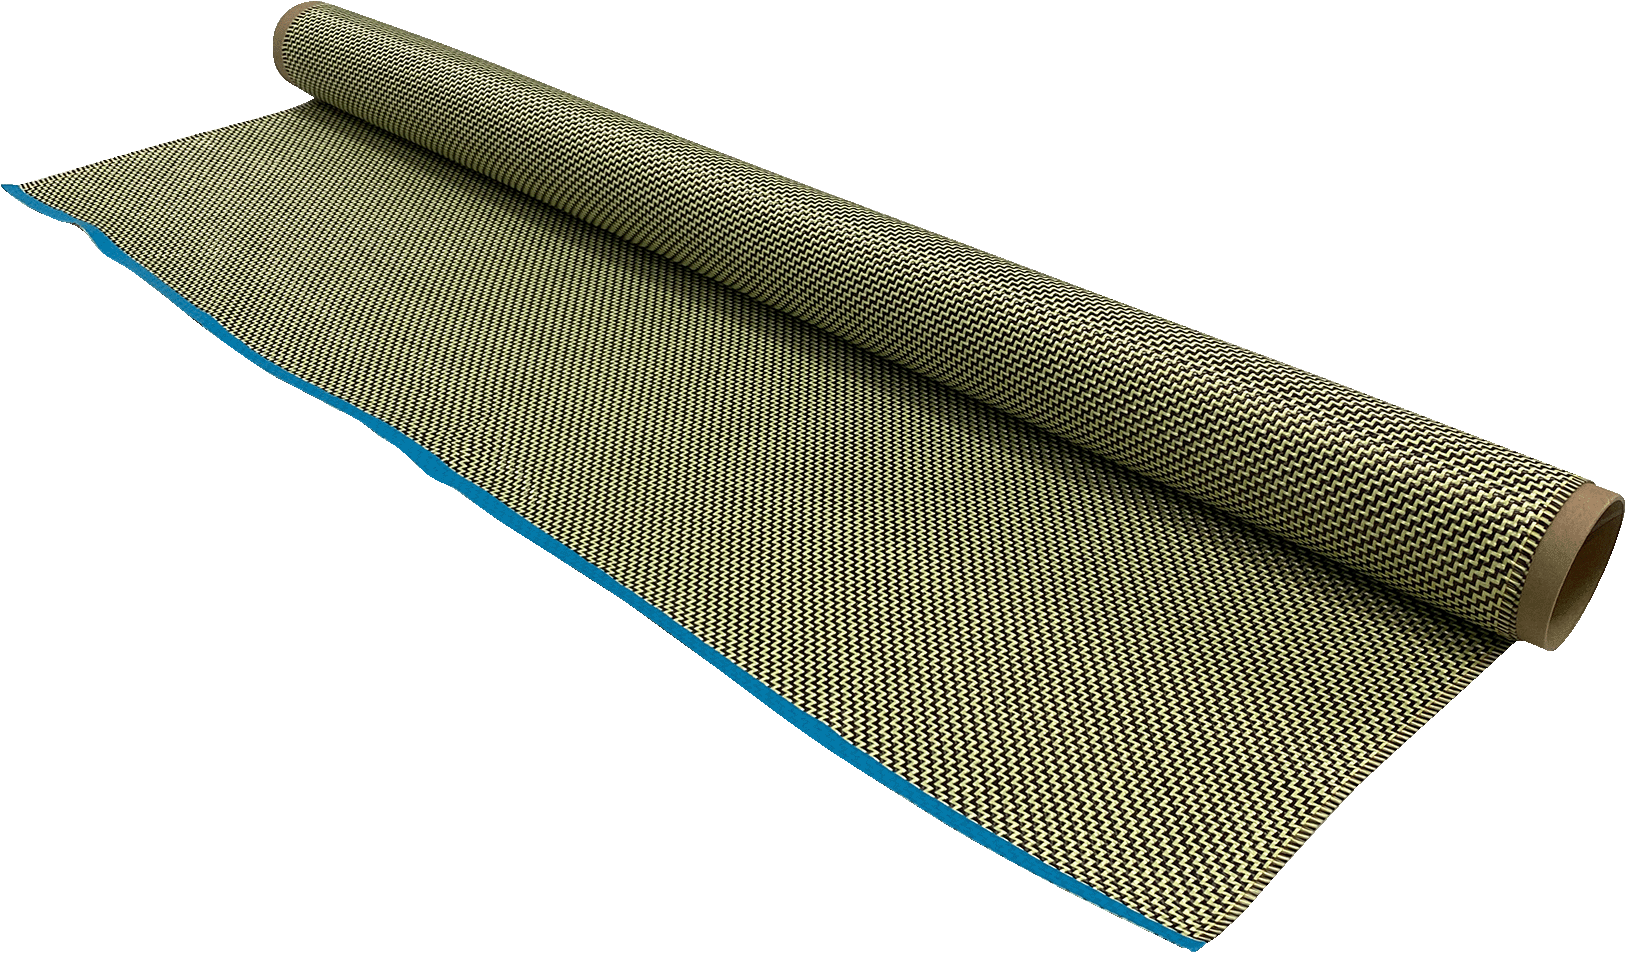 Charcoal / aramid fabric 210g / m² (twill) 1m roll